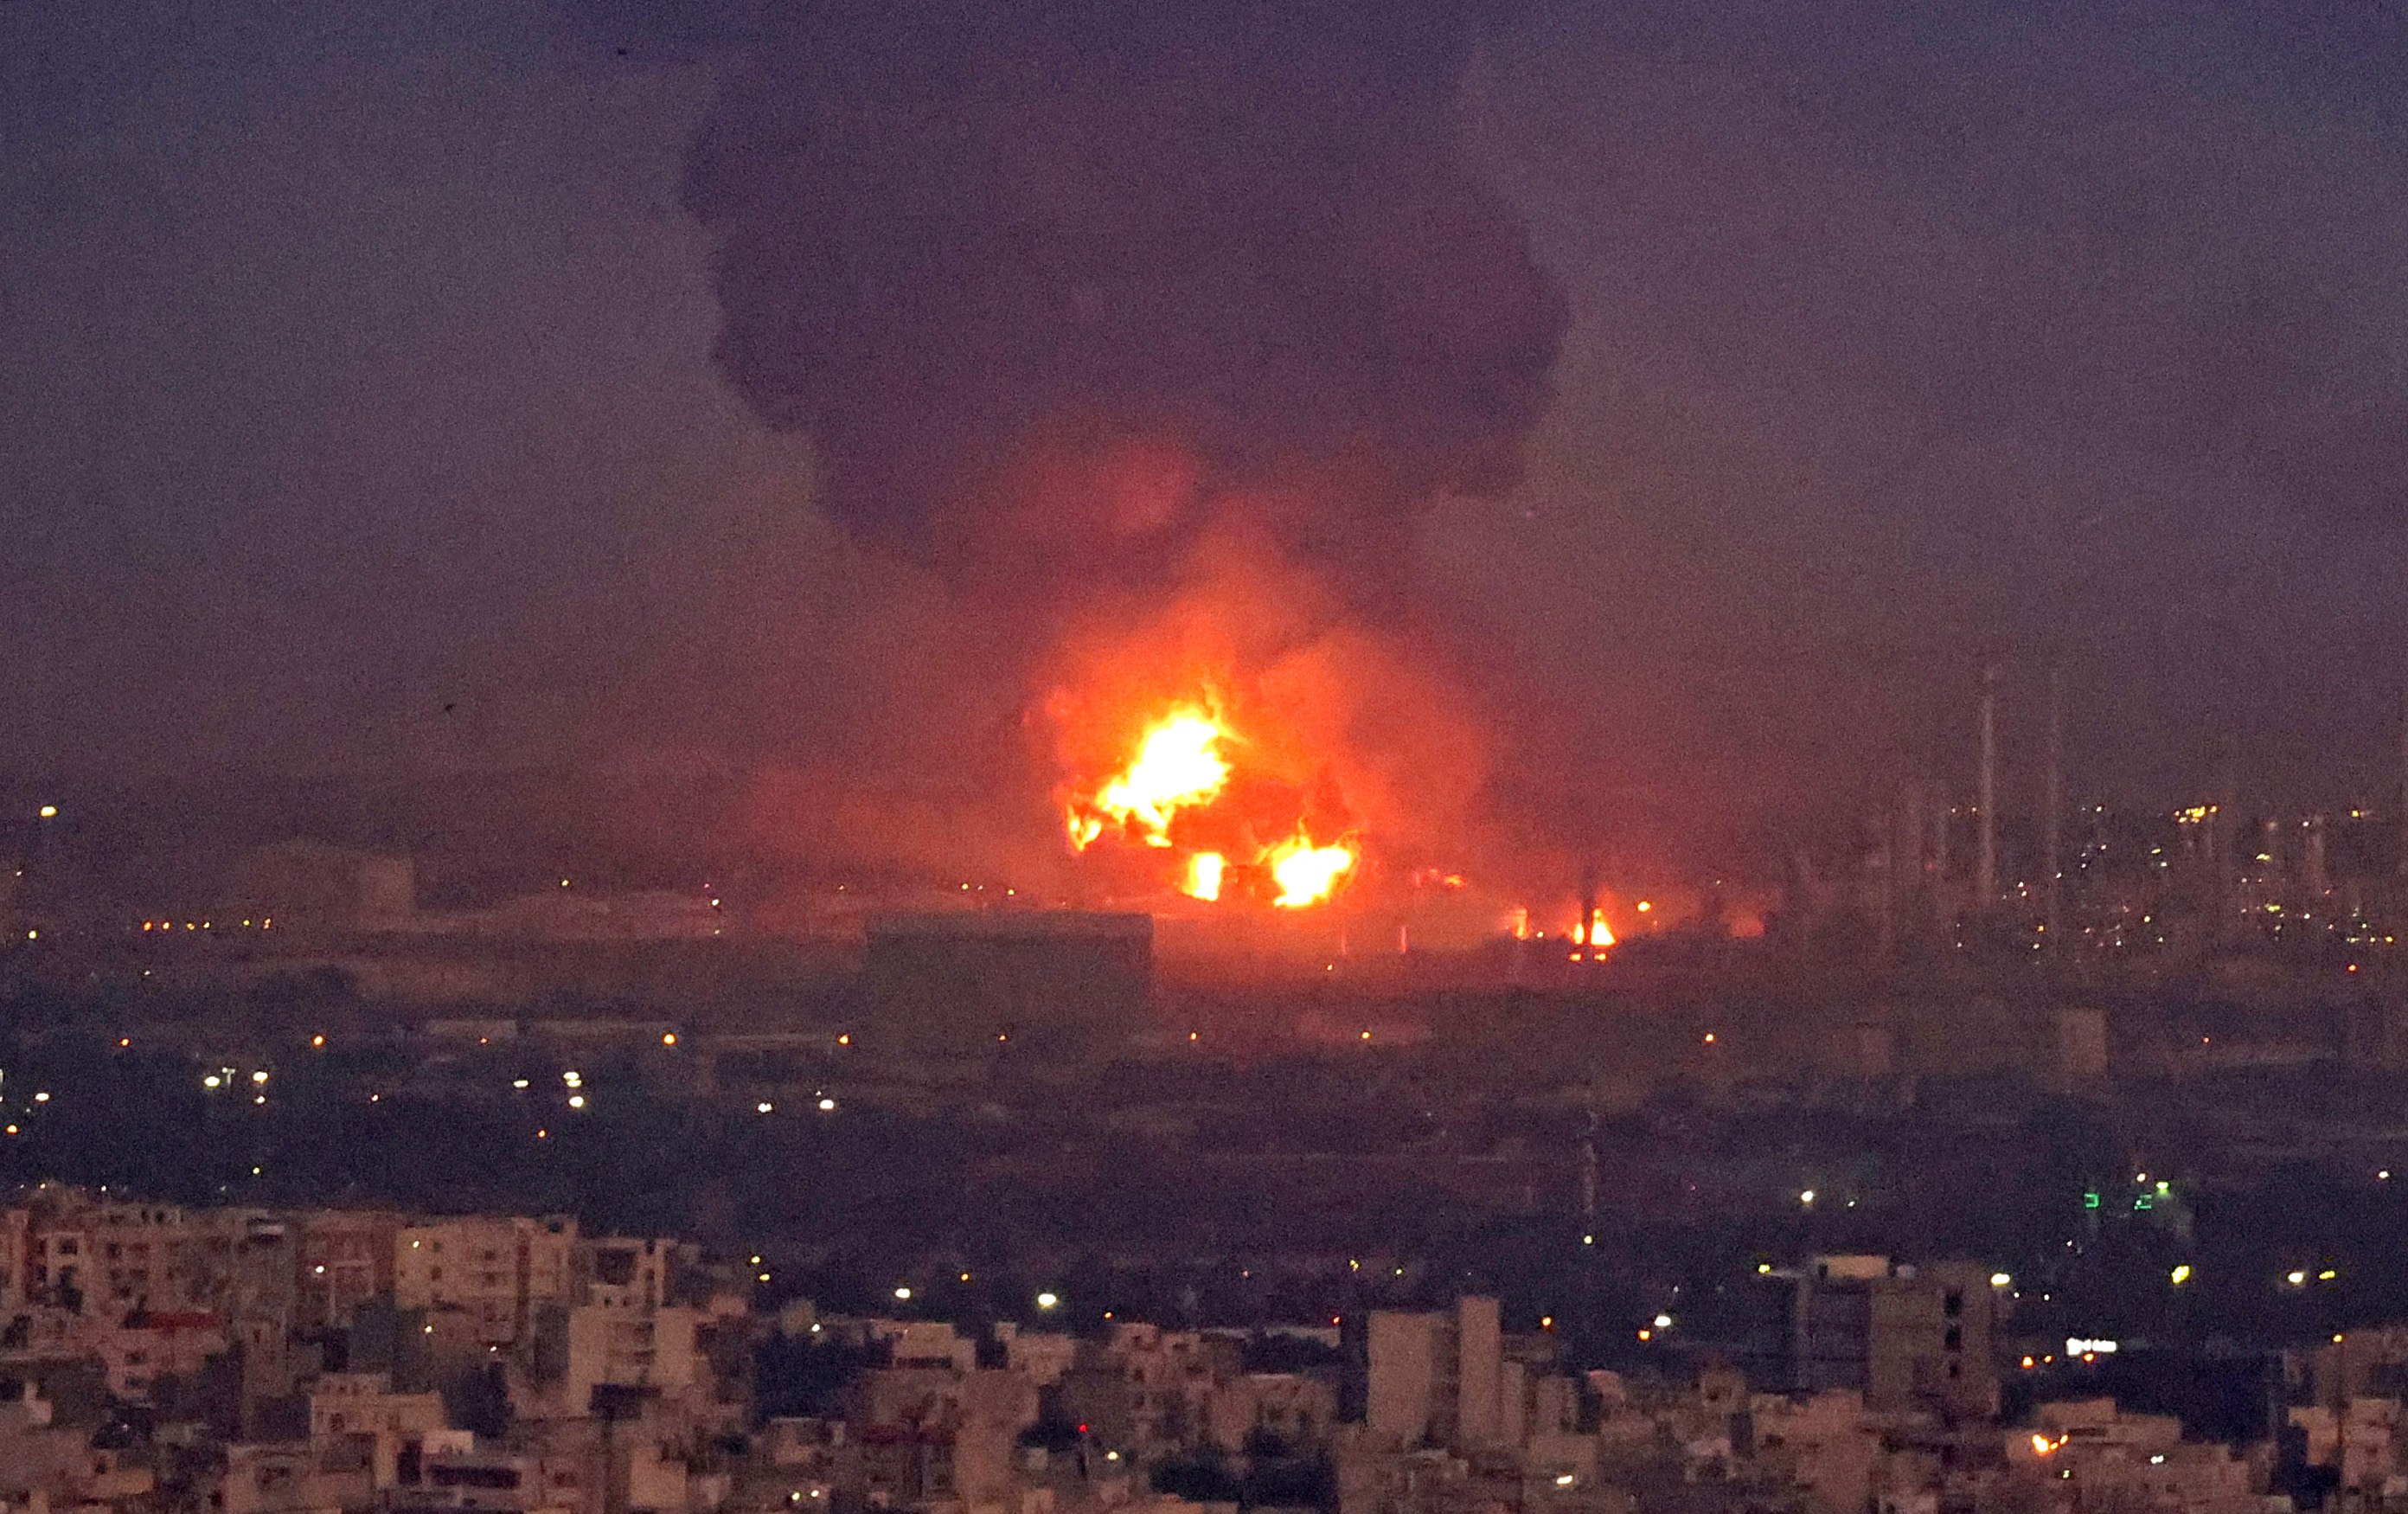 Нападение на нефтезавод. Сильный пожар на нефтеперерабатывающем заводе в Иране. Взрыв на нефтезаводе в Техасе 2005. Нефтеперабатывающий завод в инди. Пожар на нефтеперерабатывающем заводе.